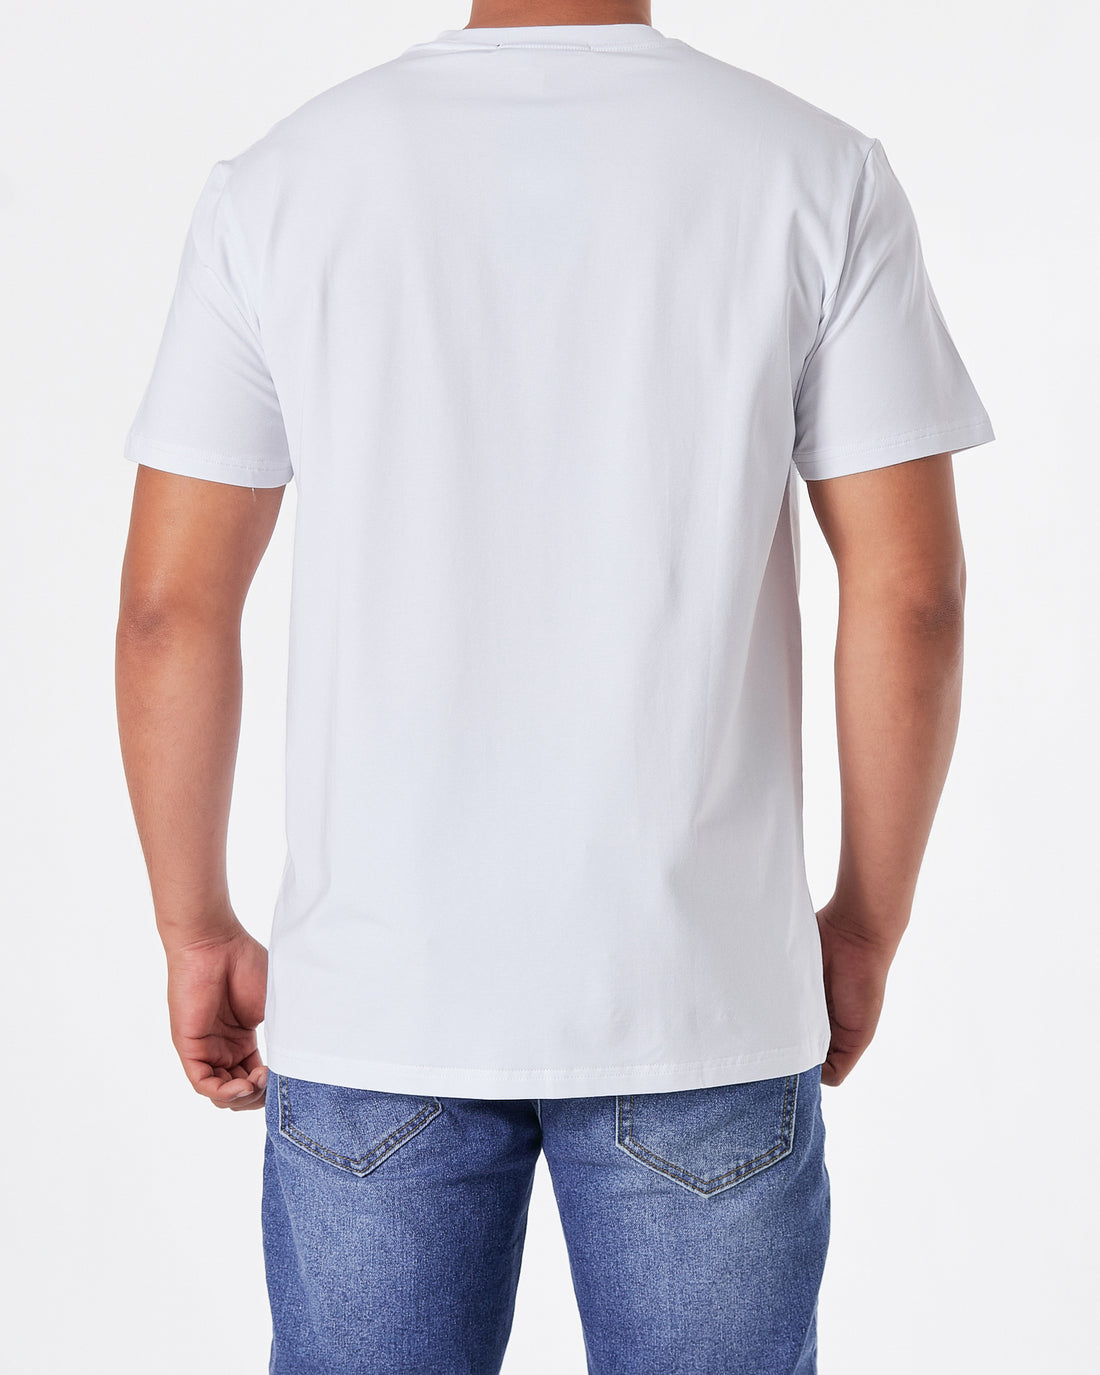 ARM Exchange Logo Printed Men White T-Shirt 15.90